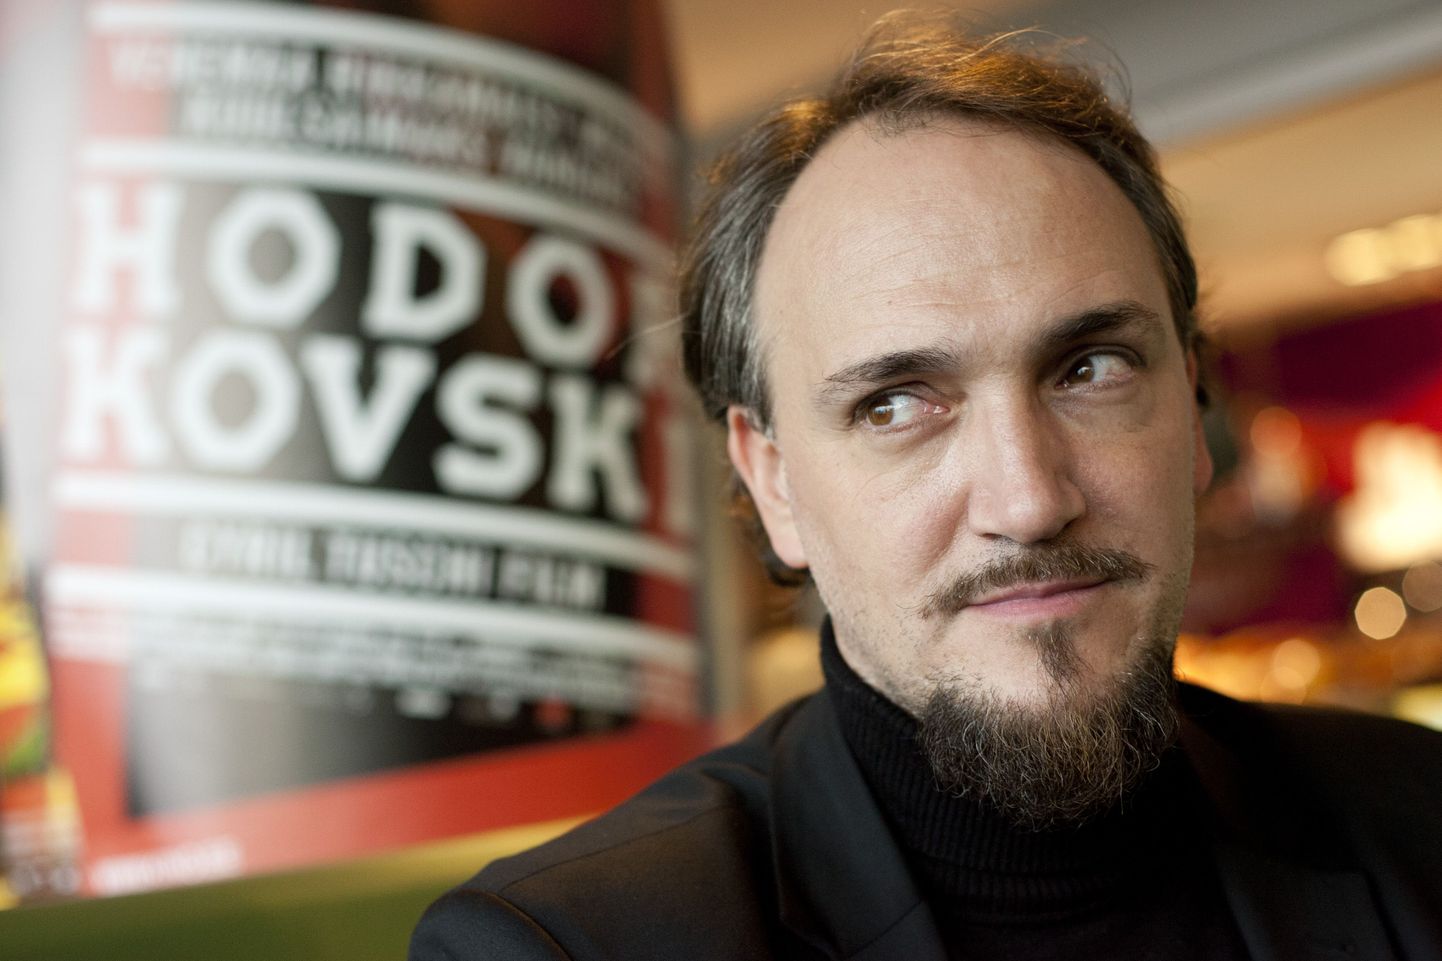 Сначала Сирил хотел снять о Ходорковском игровой фильм, в котором герою снится сон о смерти.